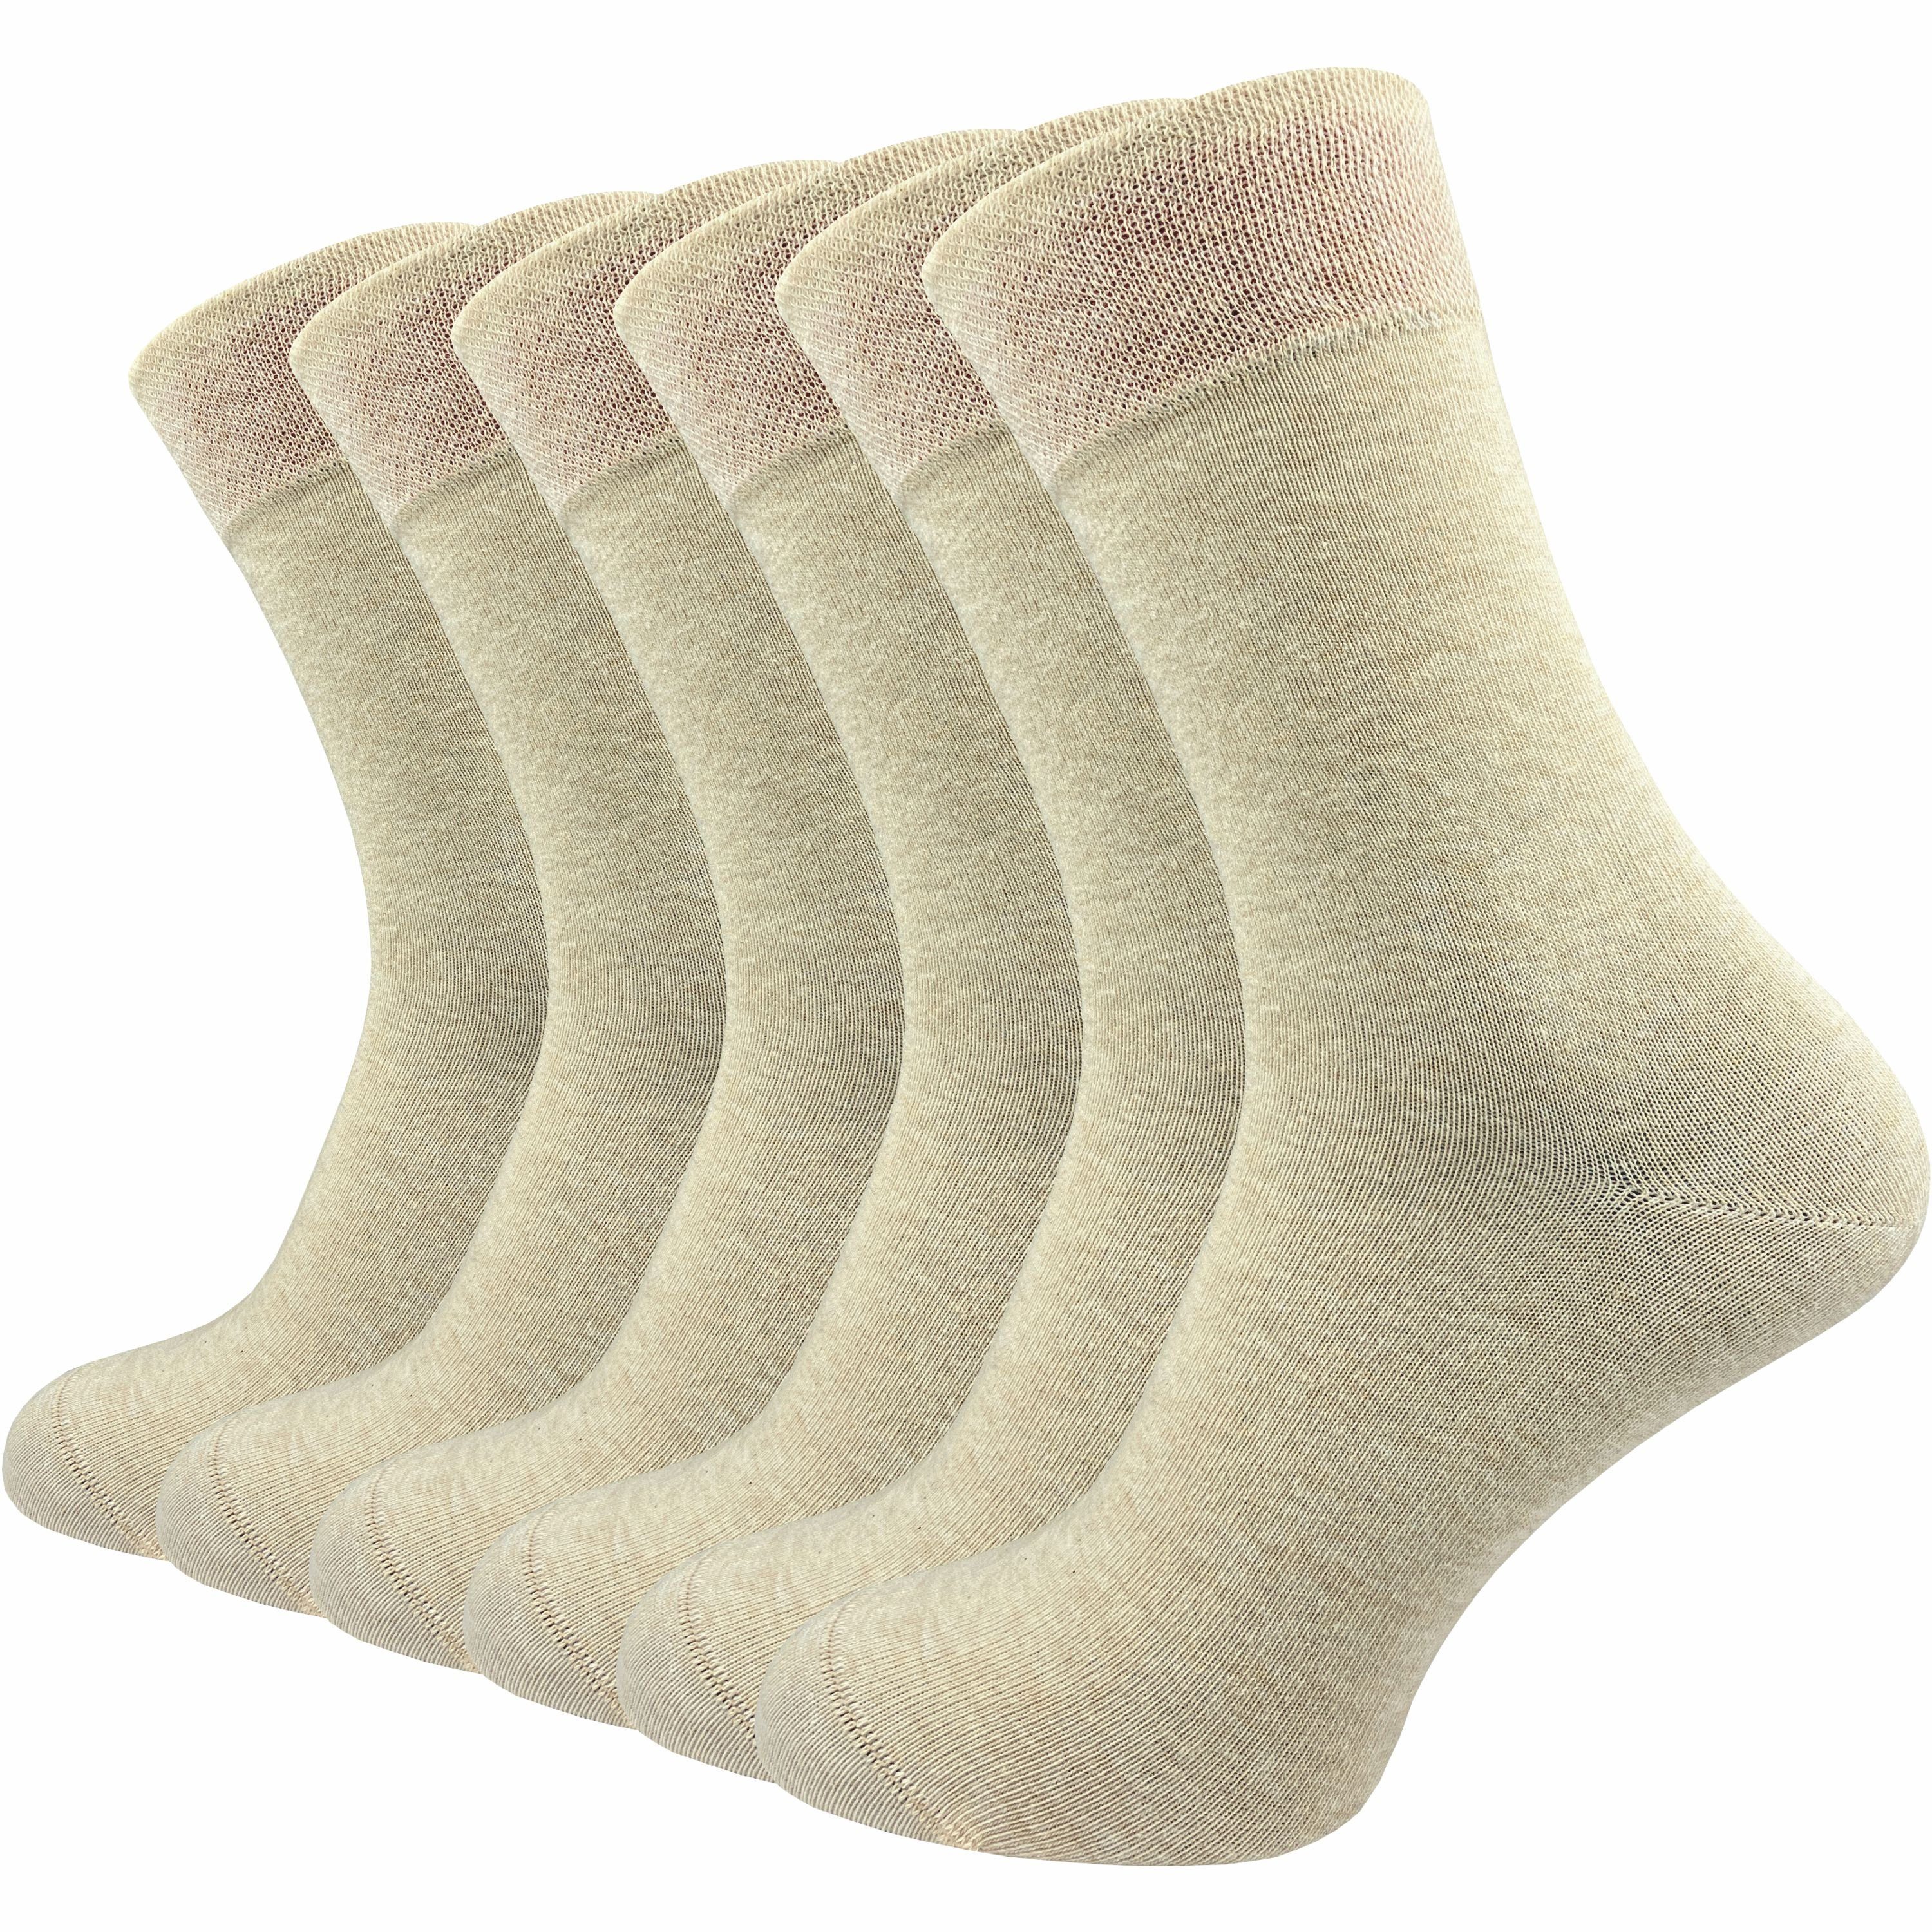 GAWILO Socken für Damen & Herren - Premium Komfortbund ohne drückende Naht (6 Paar) schwarz, grau & blau - aus hochwertiger, doppelt gekämmter Baumwolle beige